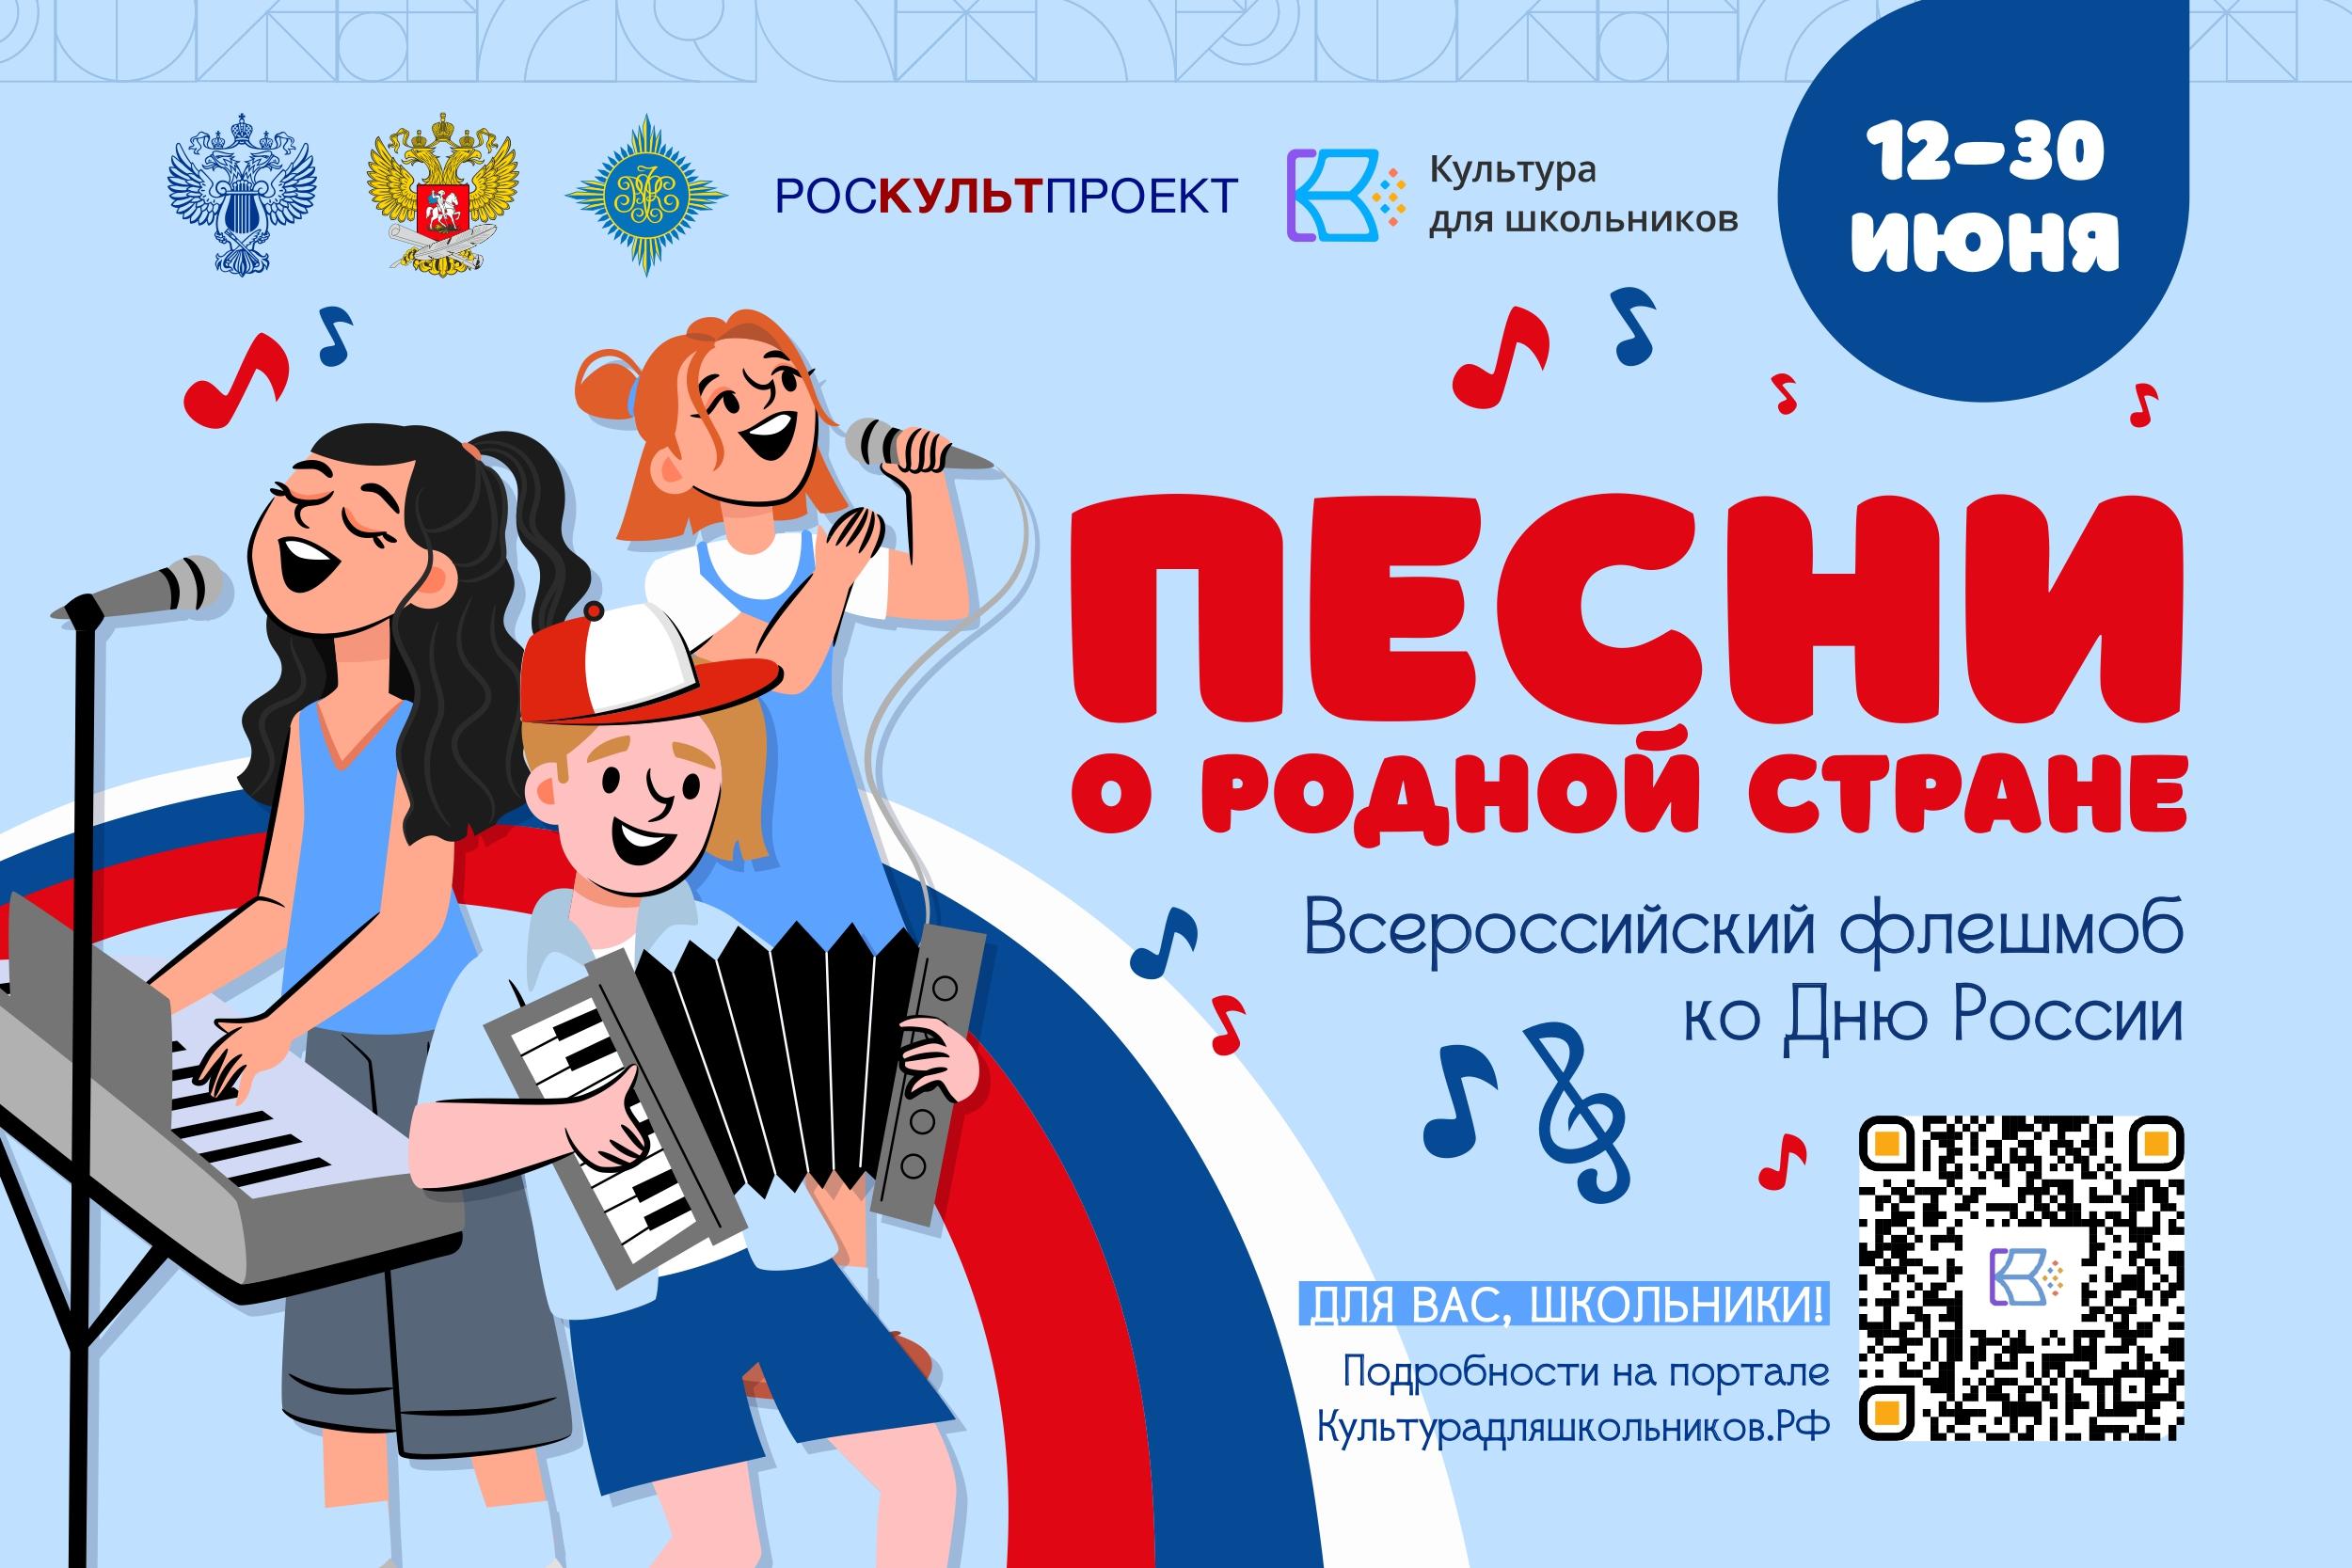 Всероссийский флешмоб «Песни о родной стране» пройдёт в регионе.